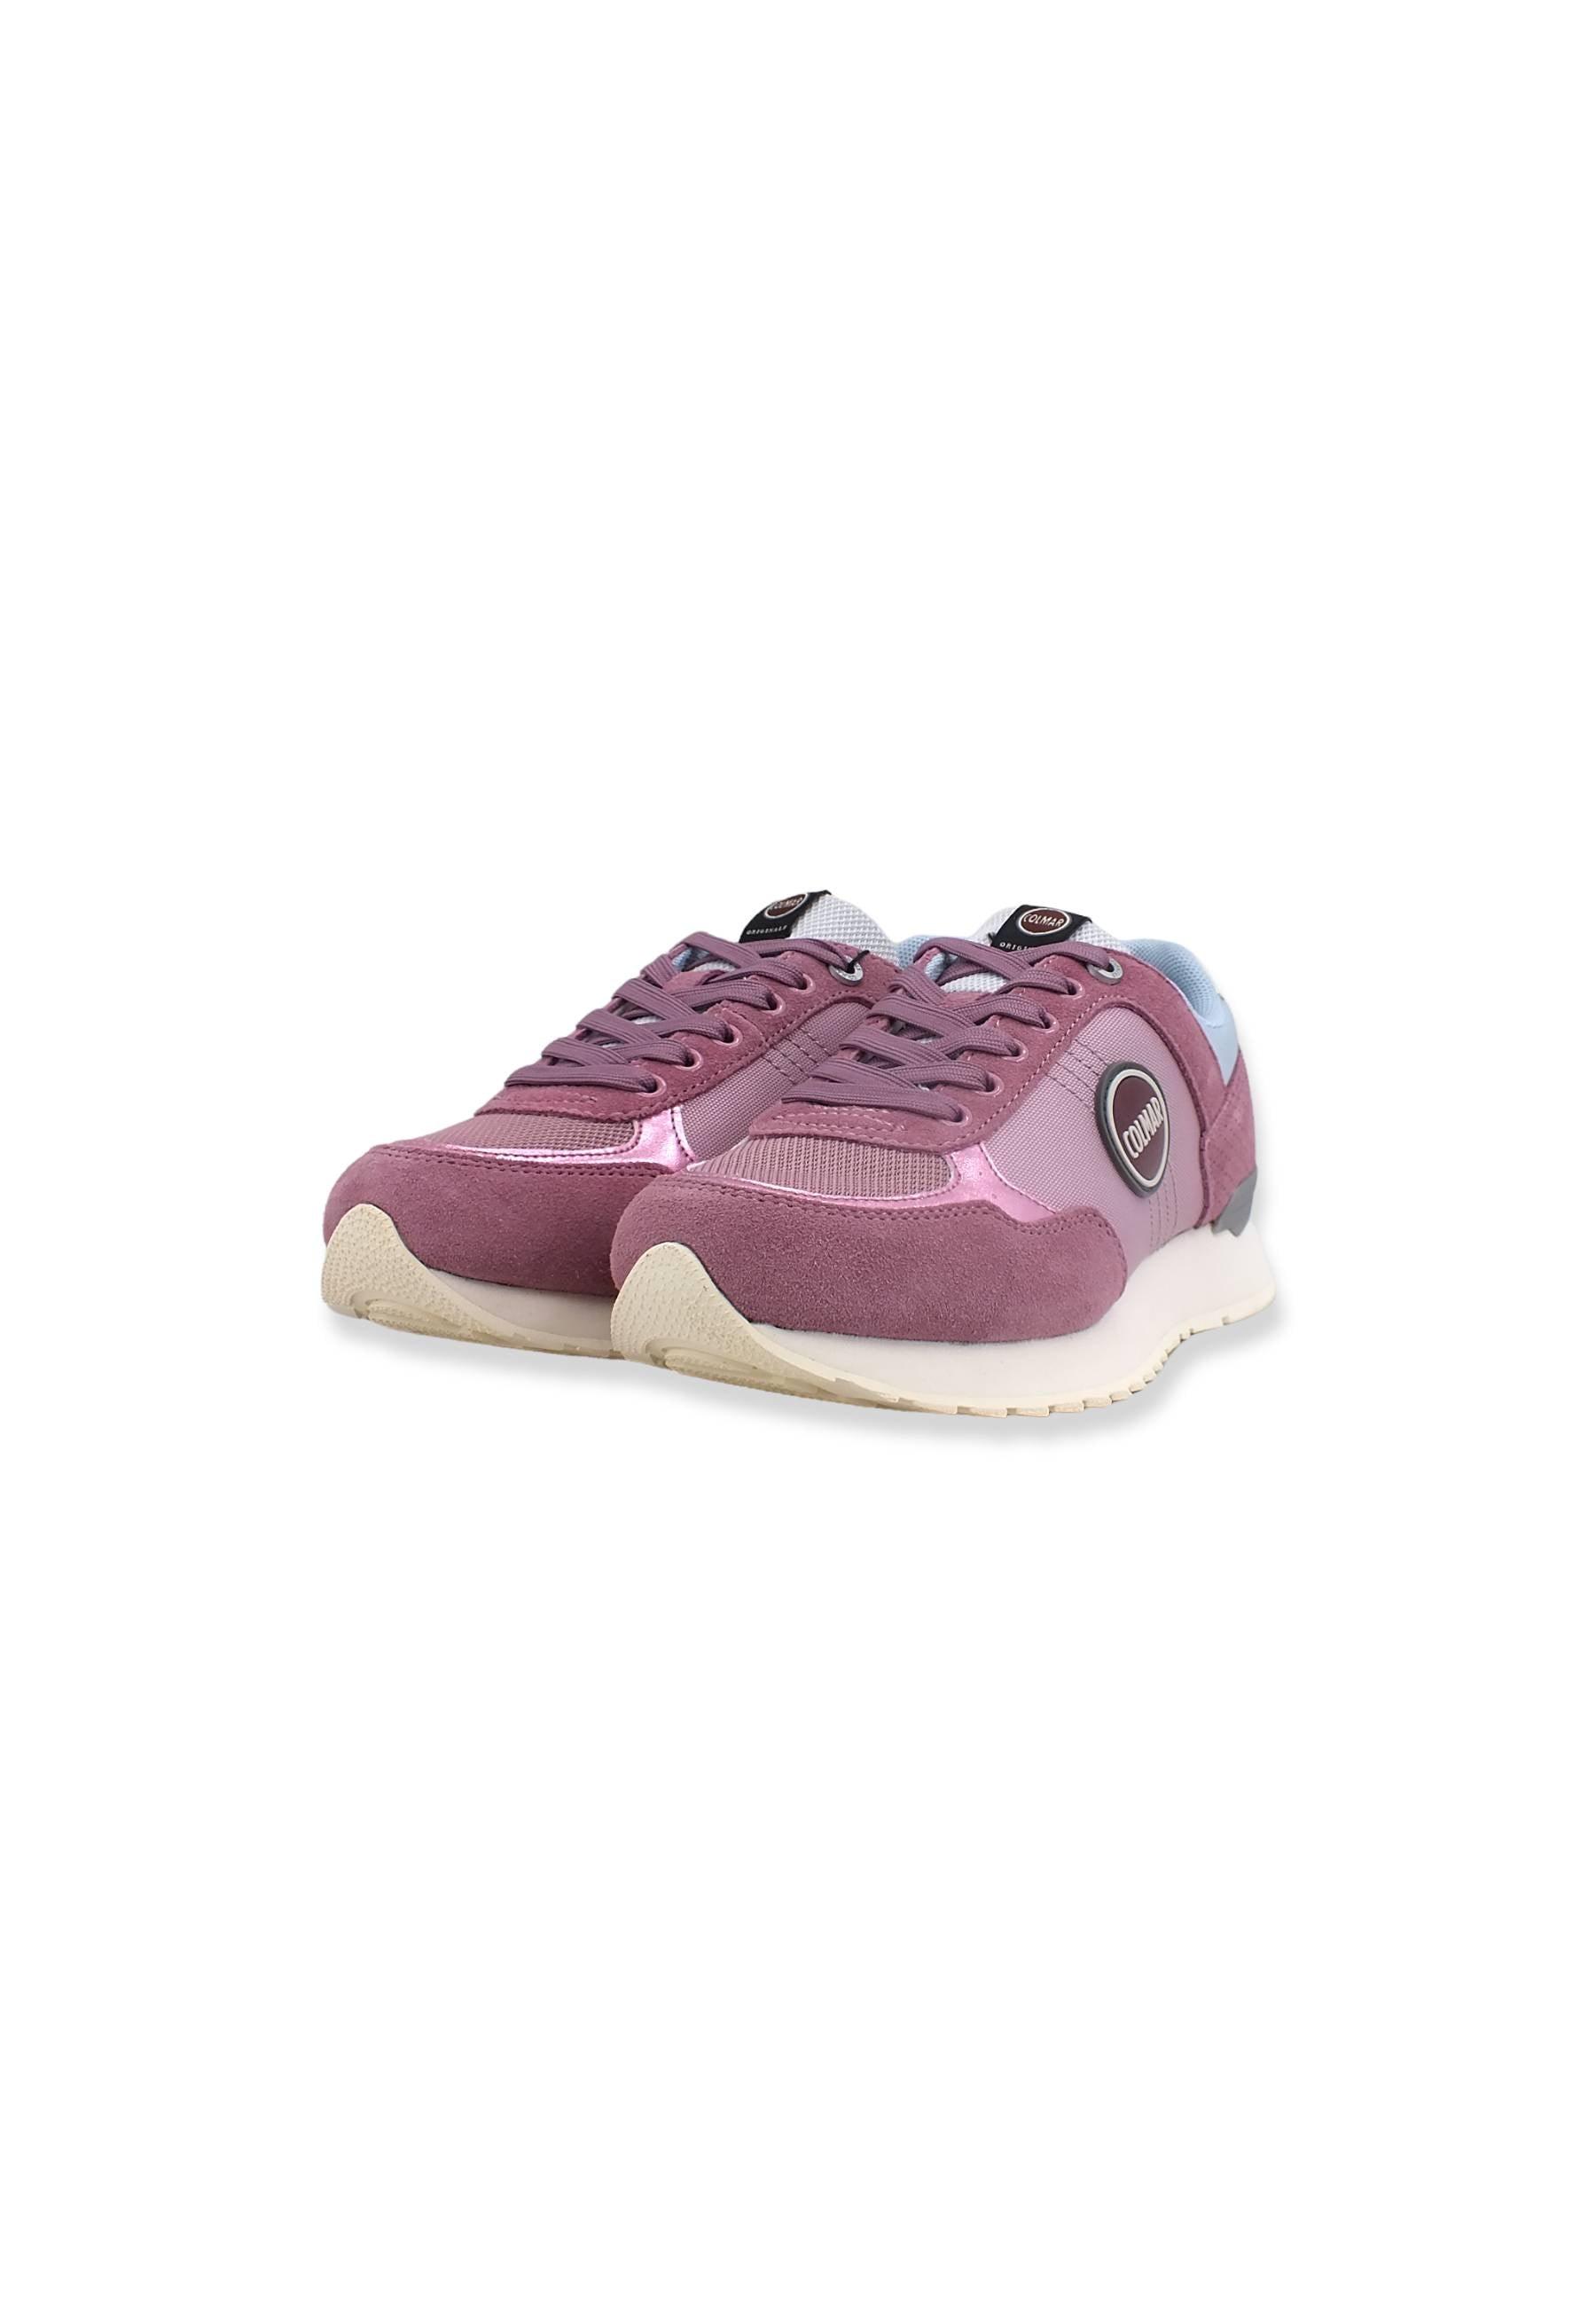 COLMAR Sneaker Running Donna Dusty Rose Silver Lavander TRAVIS AUTHENTIC - Sandrini Calzature e Abbigliamento